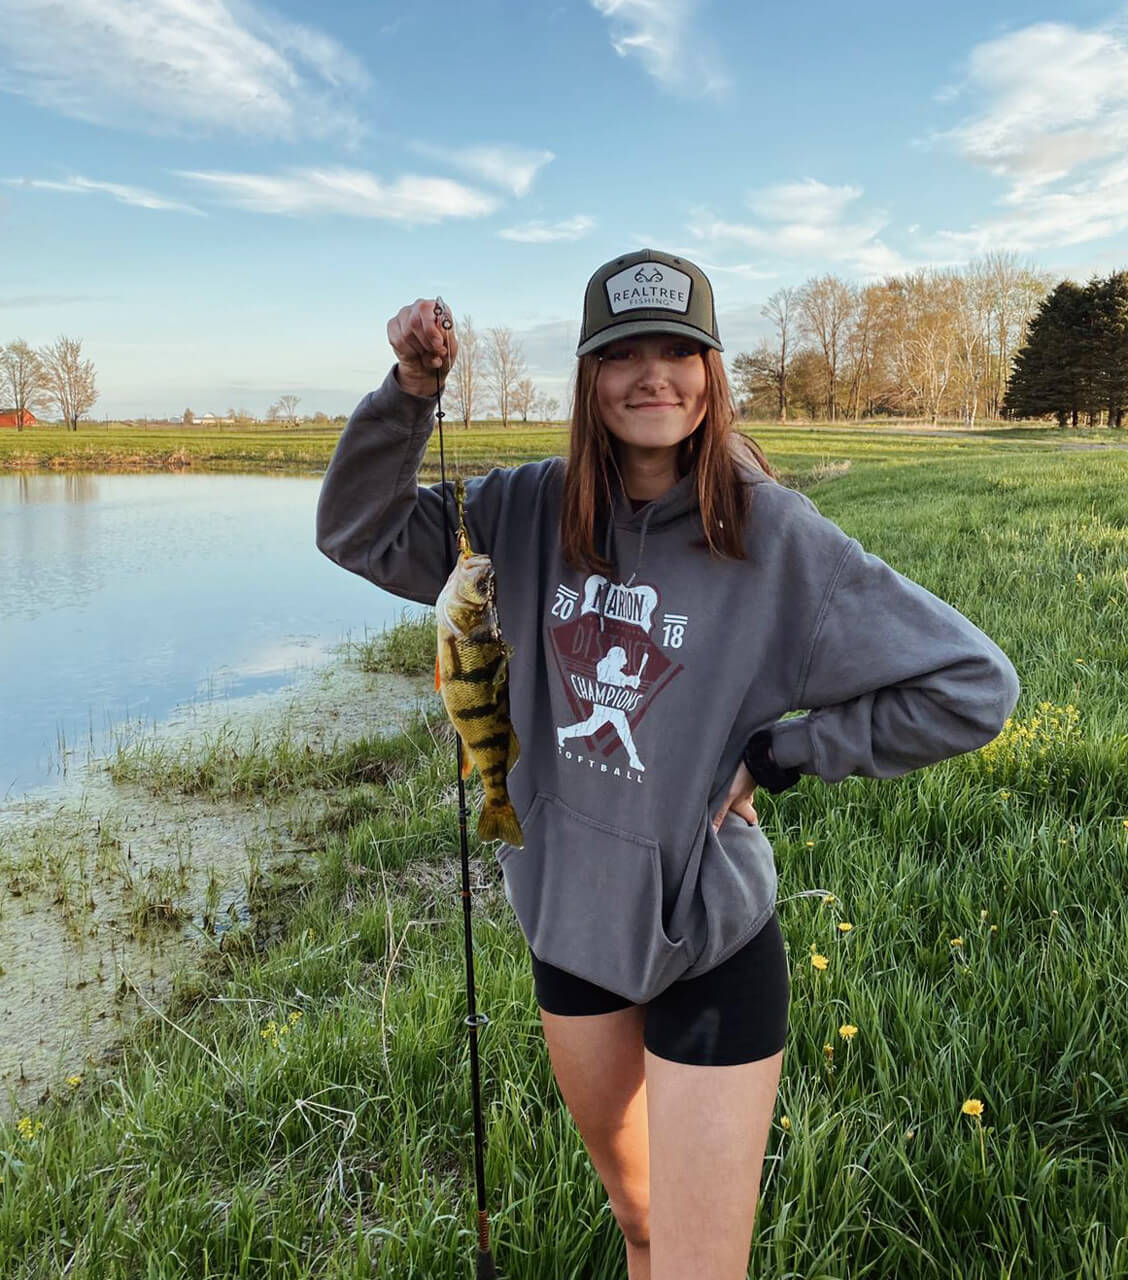 chica joven portando gorra y sudadera, sujetando caña y pescado junto al río